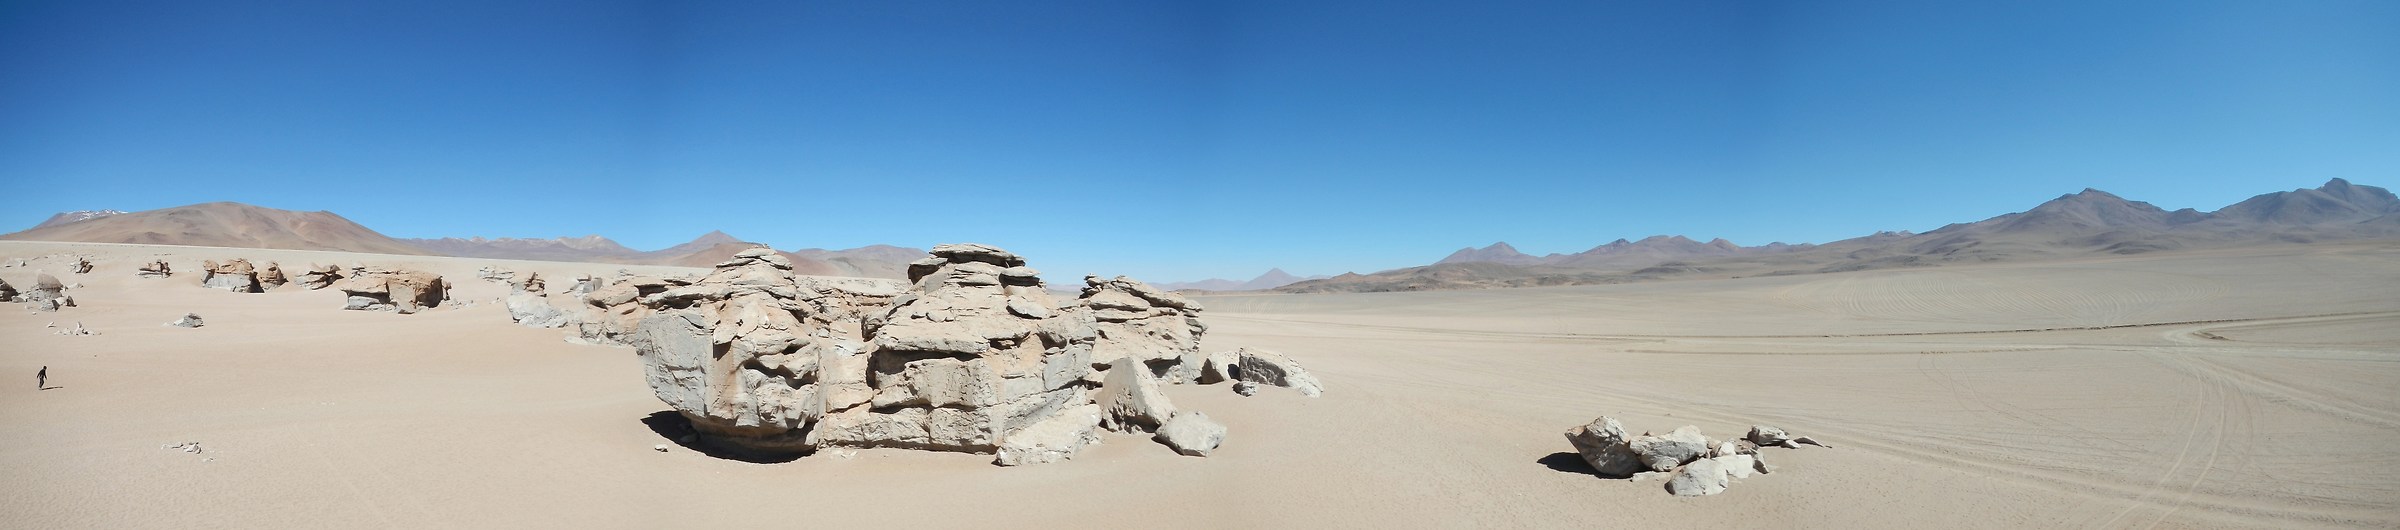 Bolivia: desierto de Siloli...